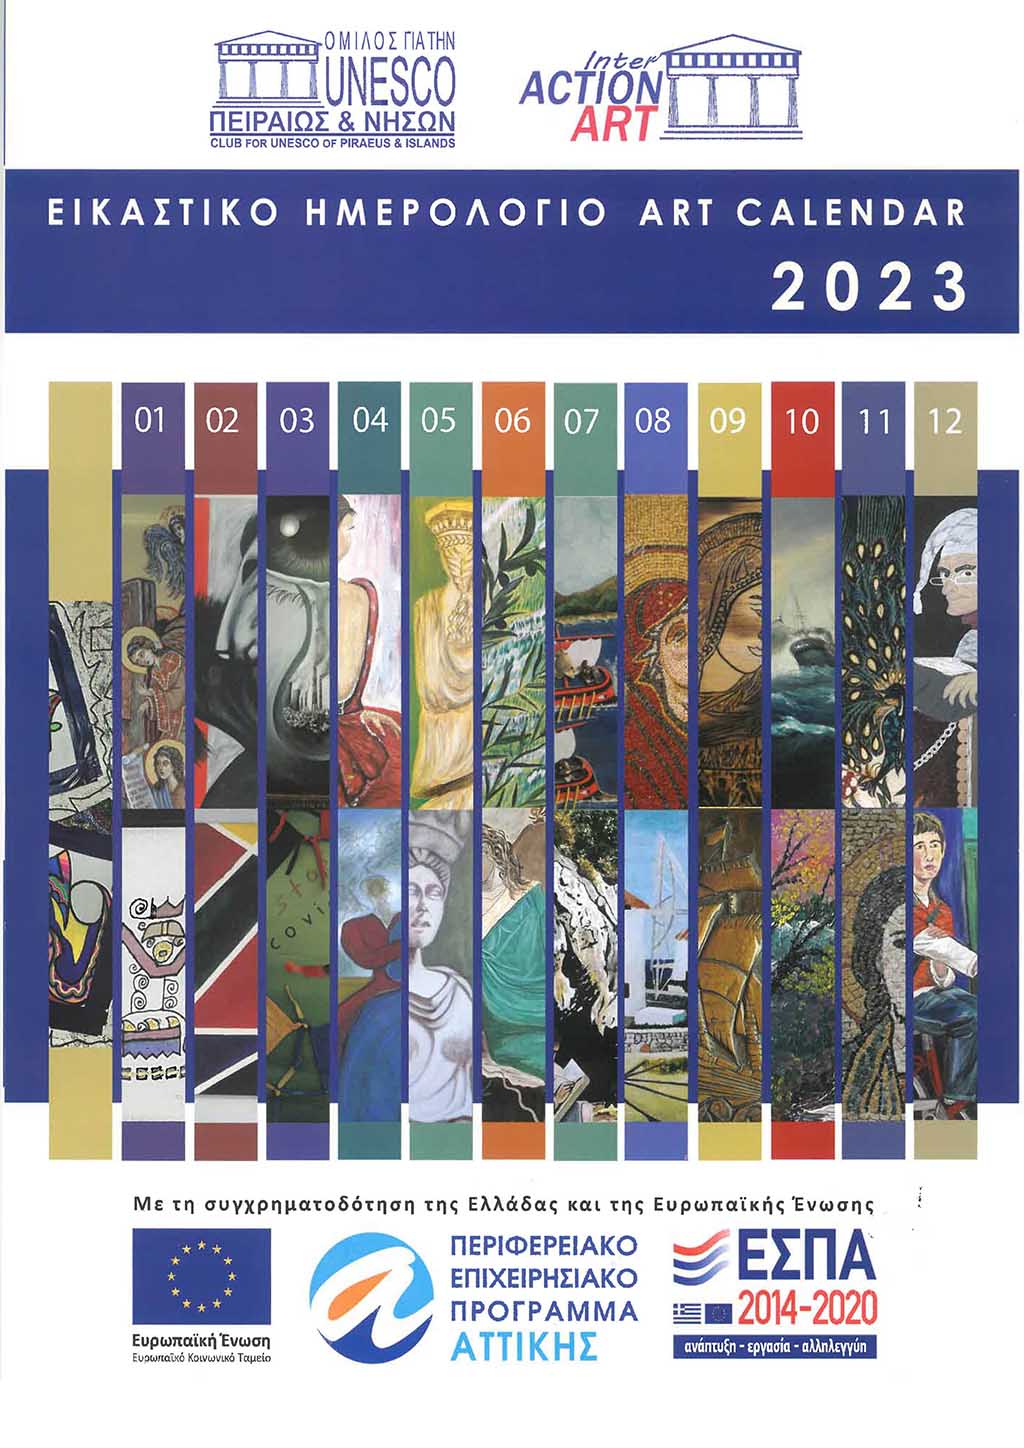 Το νέο εικαστικό ημερολόγιο του Ομίλου UNESCO Πειραιώς και Νήσων και του διεθνούς οργανισμού  International Action Art για το 2023